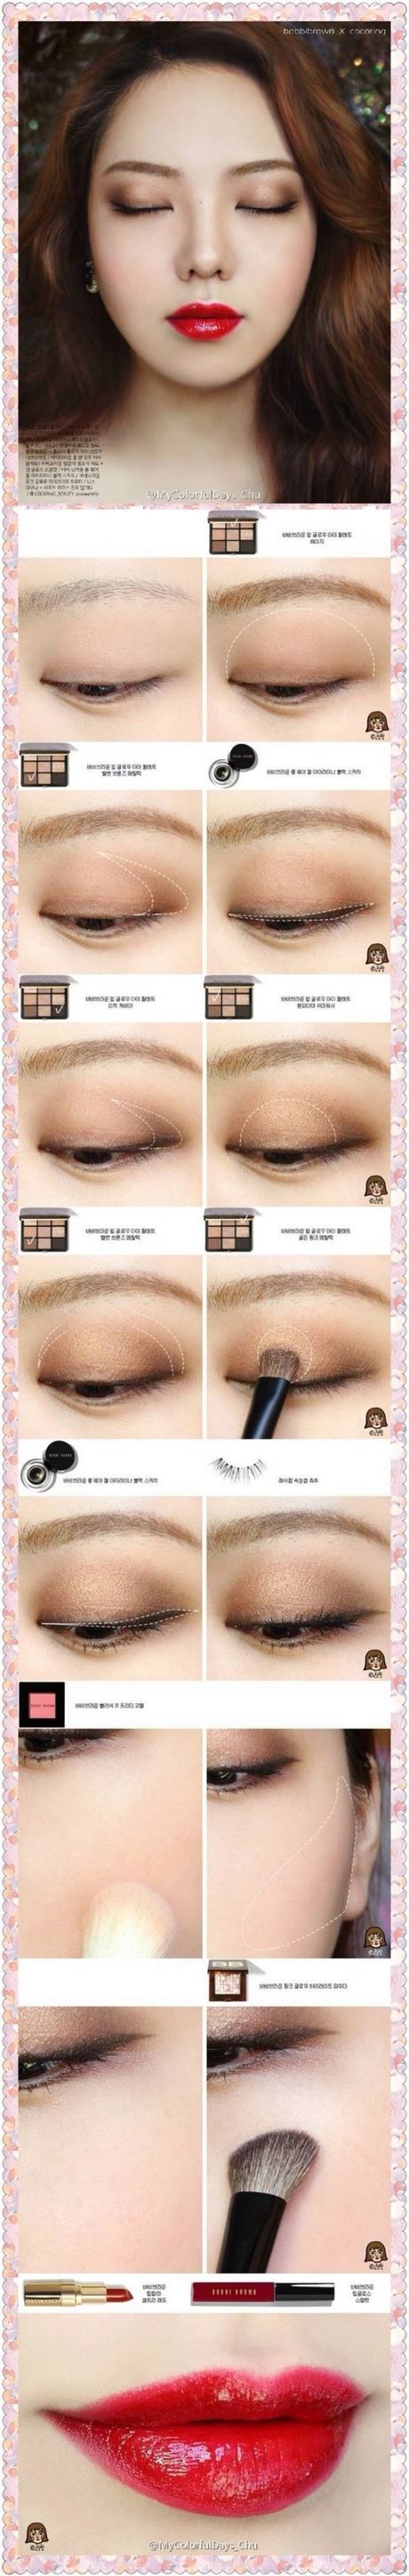 eyeshadow-makeup-tutorial-for-asian-eyes-01_6 Oogschaduw make - up tutorial voor Aziatische ogen